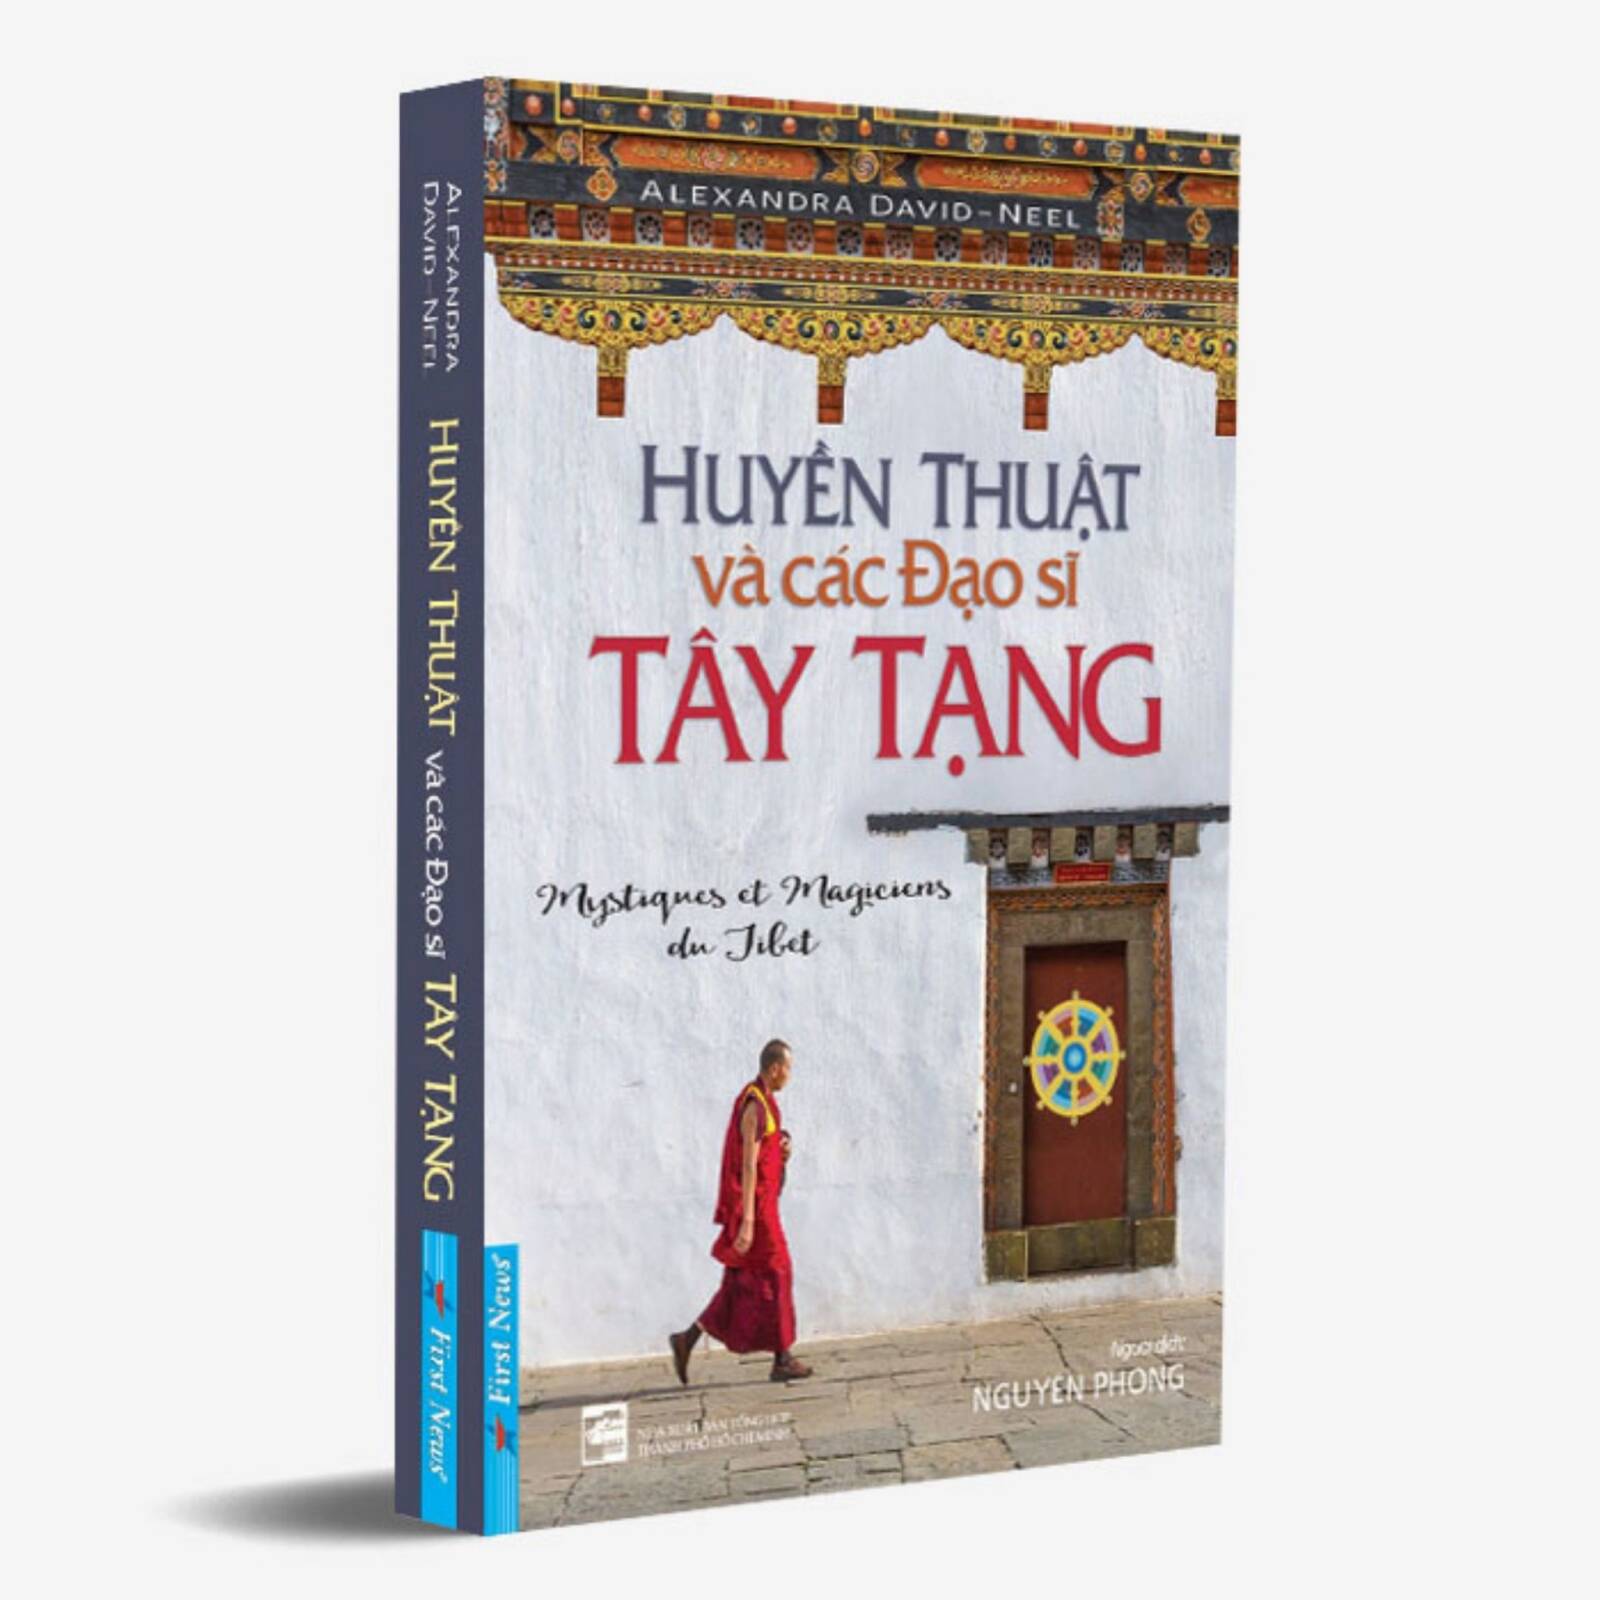 Huyền Thuật Và Các Đạo Sĩ Tây Tạng - Bộ sách Nguyên Phong - Việt buy